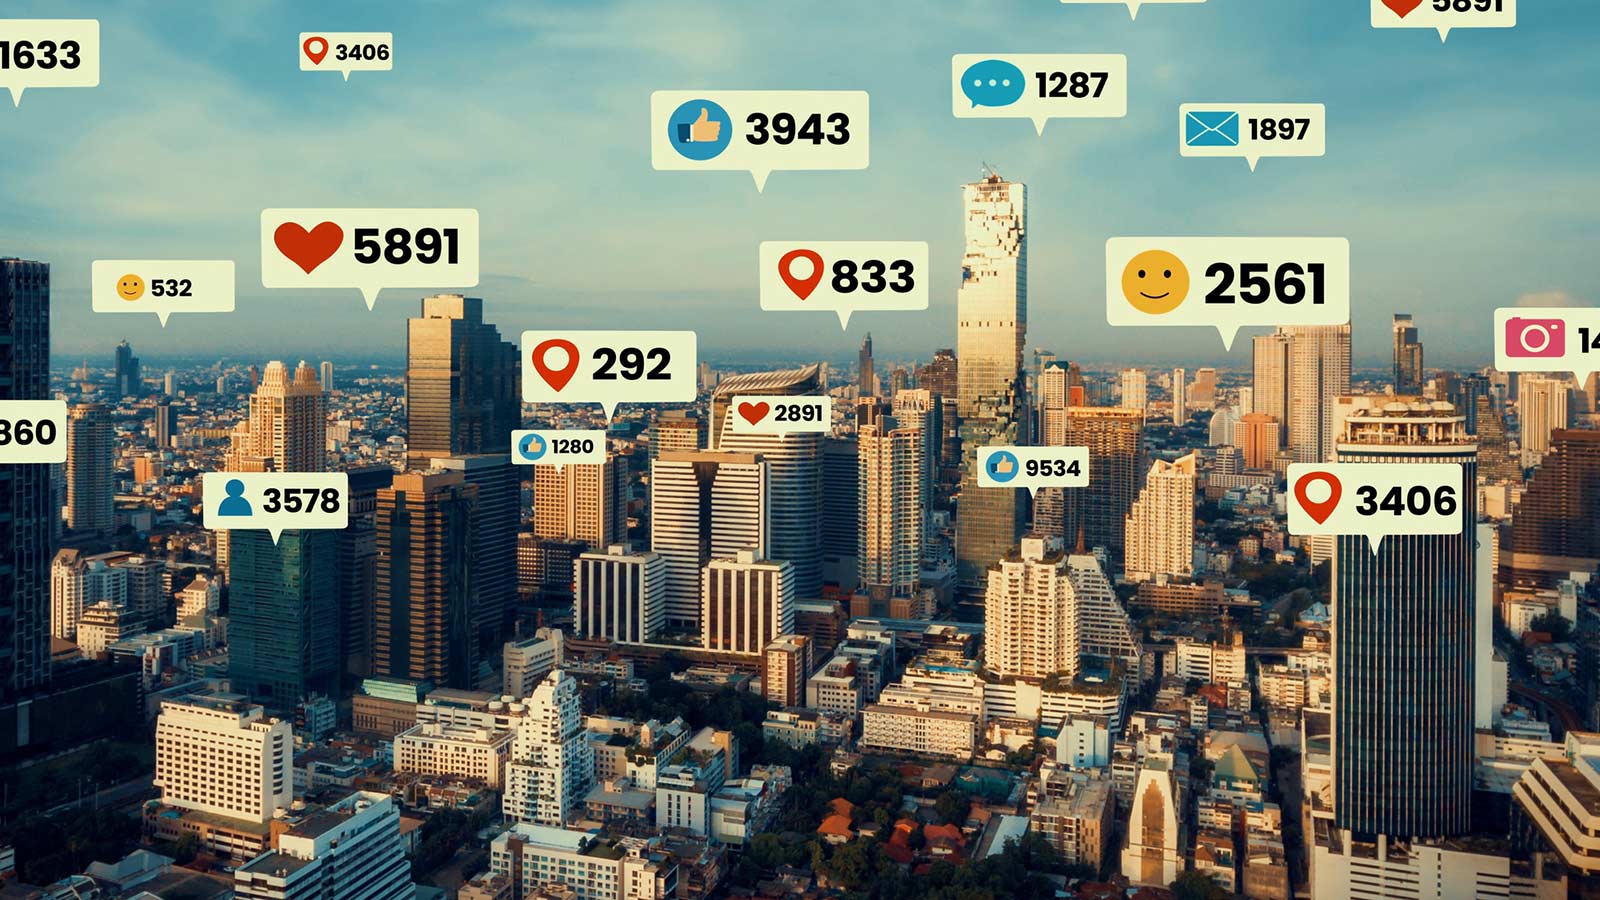 Αστικό τοπίο με bubbles από social media νούμερα